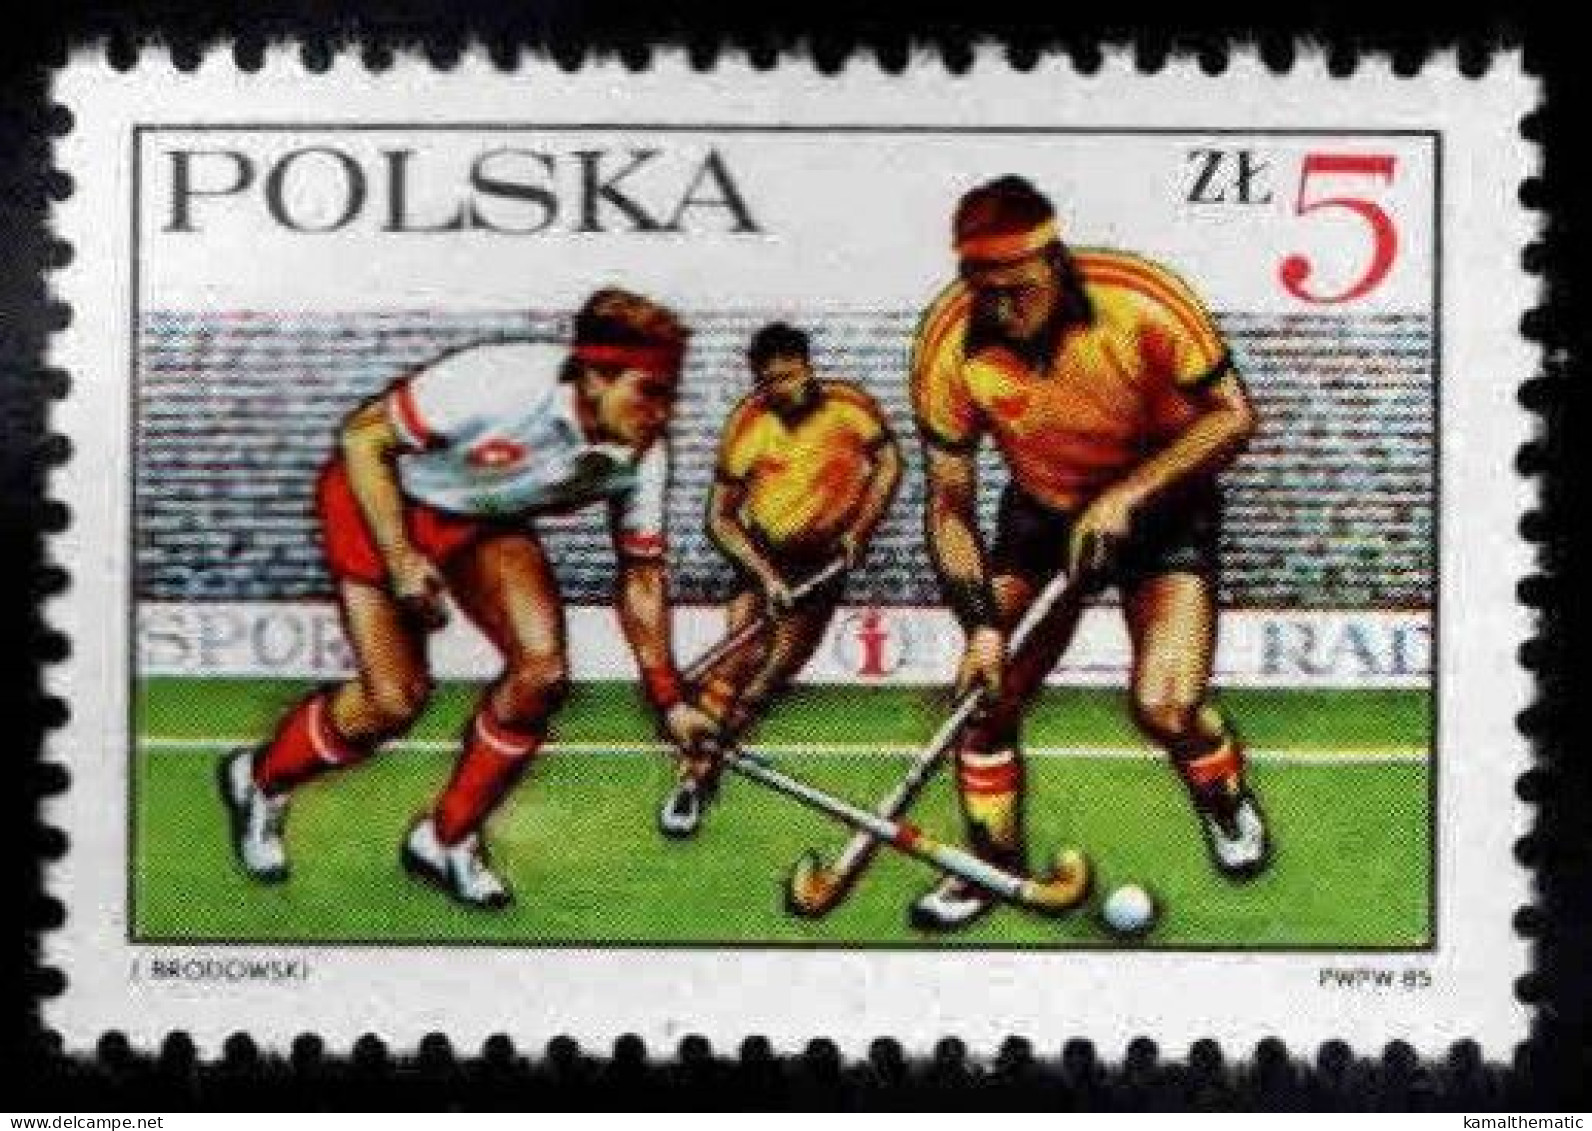 Poland 1985 MNH, Polish Field Hockey, 60th Anniv., Sports - Rasenhockey